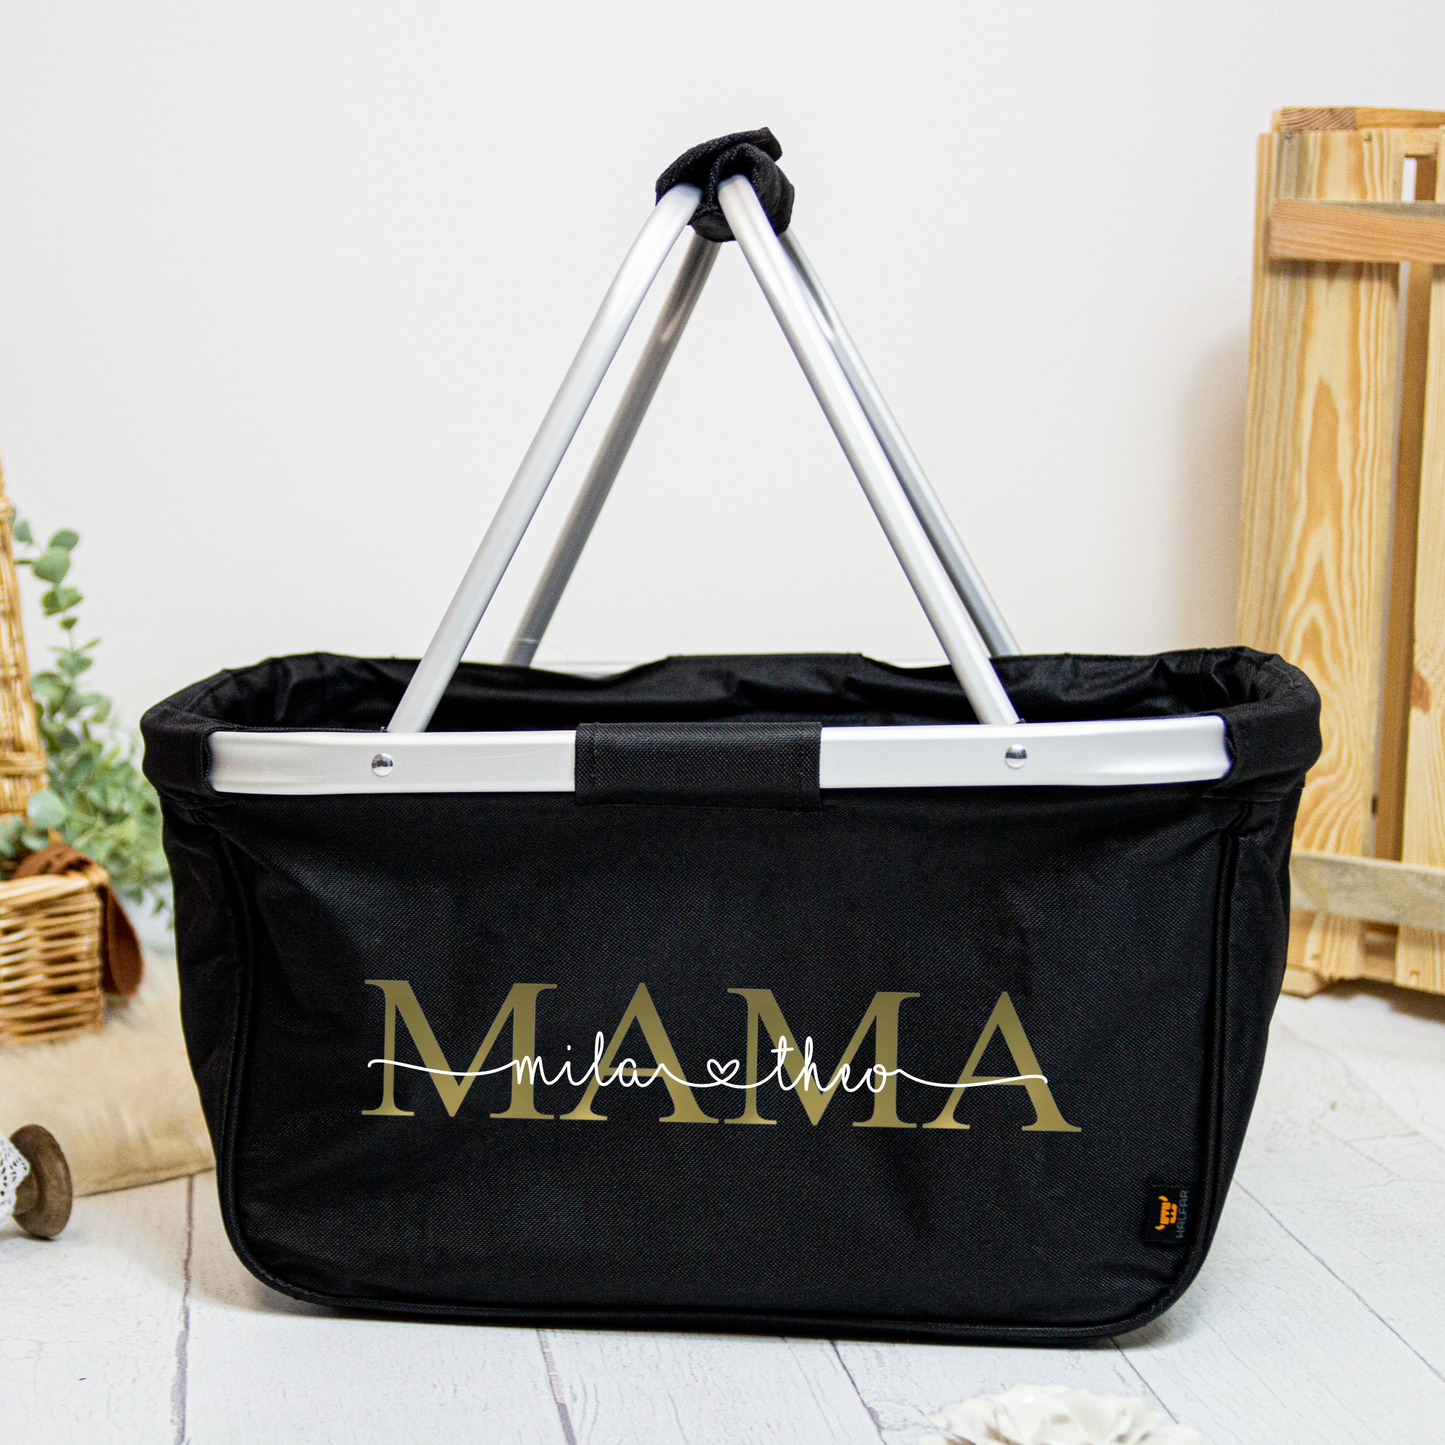 Geschenk Muttertag oder Geburtstag - personalisierter Einkaufskorb MAMA oder MOM mit Namen der Kinder - Farbe Grau, Navy oder Schwarz